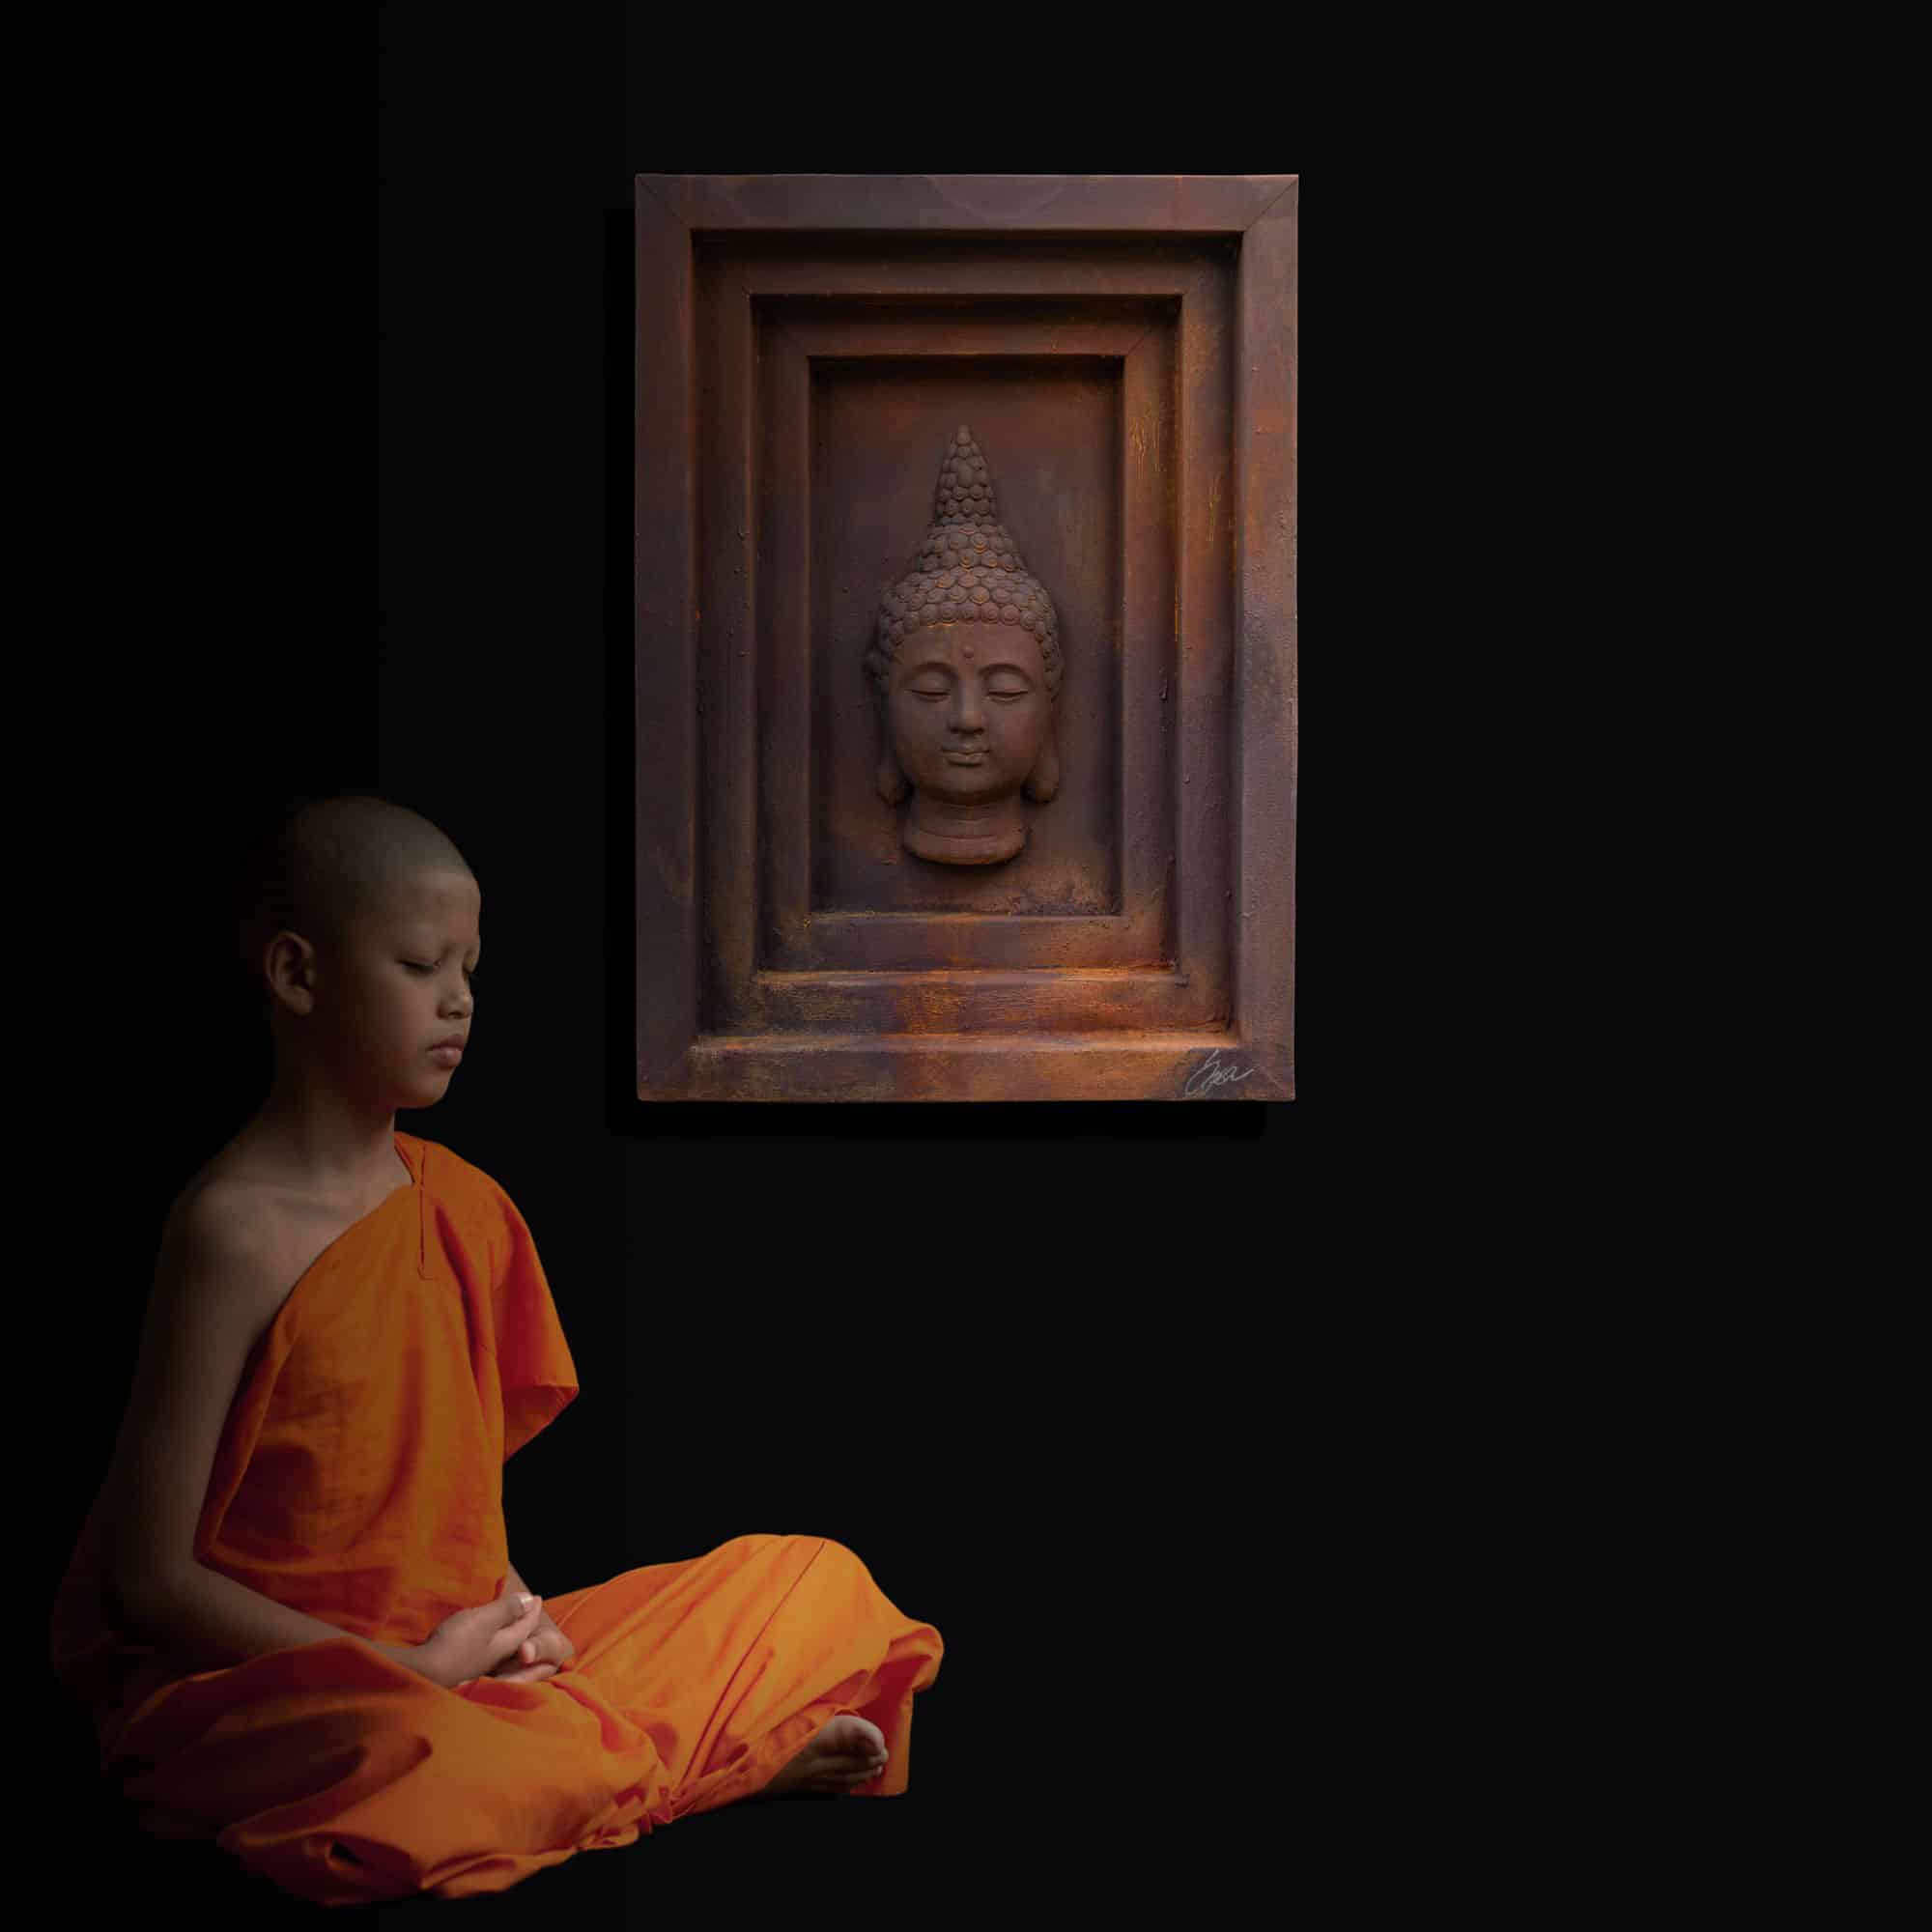 Stahlbild bzw. Bild aus Metall mit dem Namen „Tempel“ aus der Archiv Kollektion von Daniel Springer. Stahlbild mit Rostoberfläche und Buddha Kopf und Mönchskind